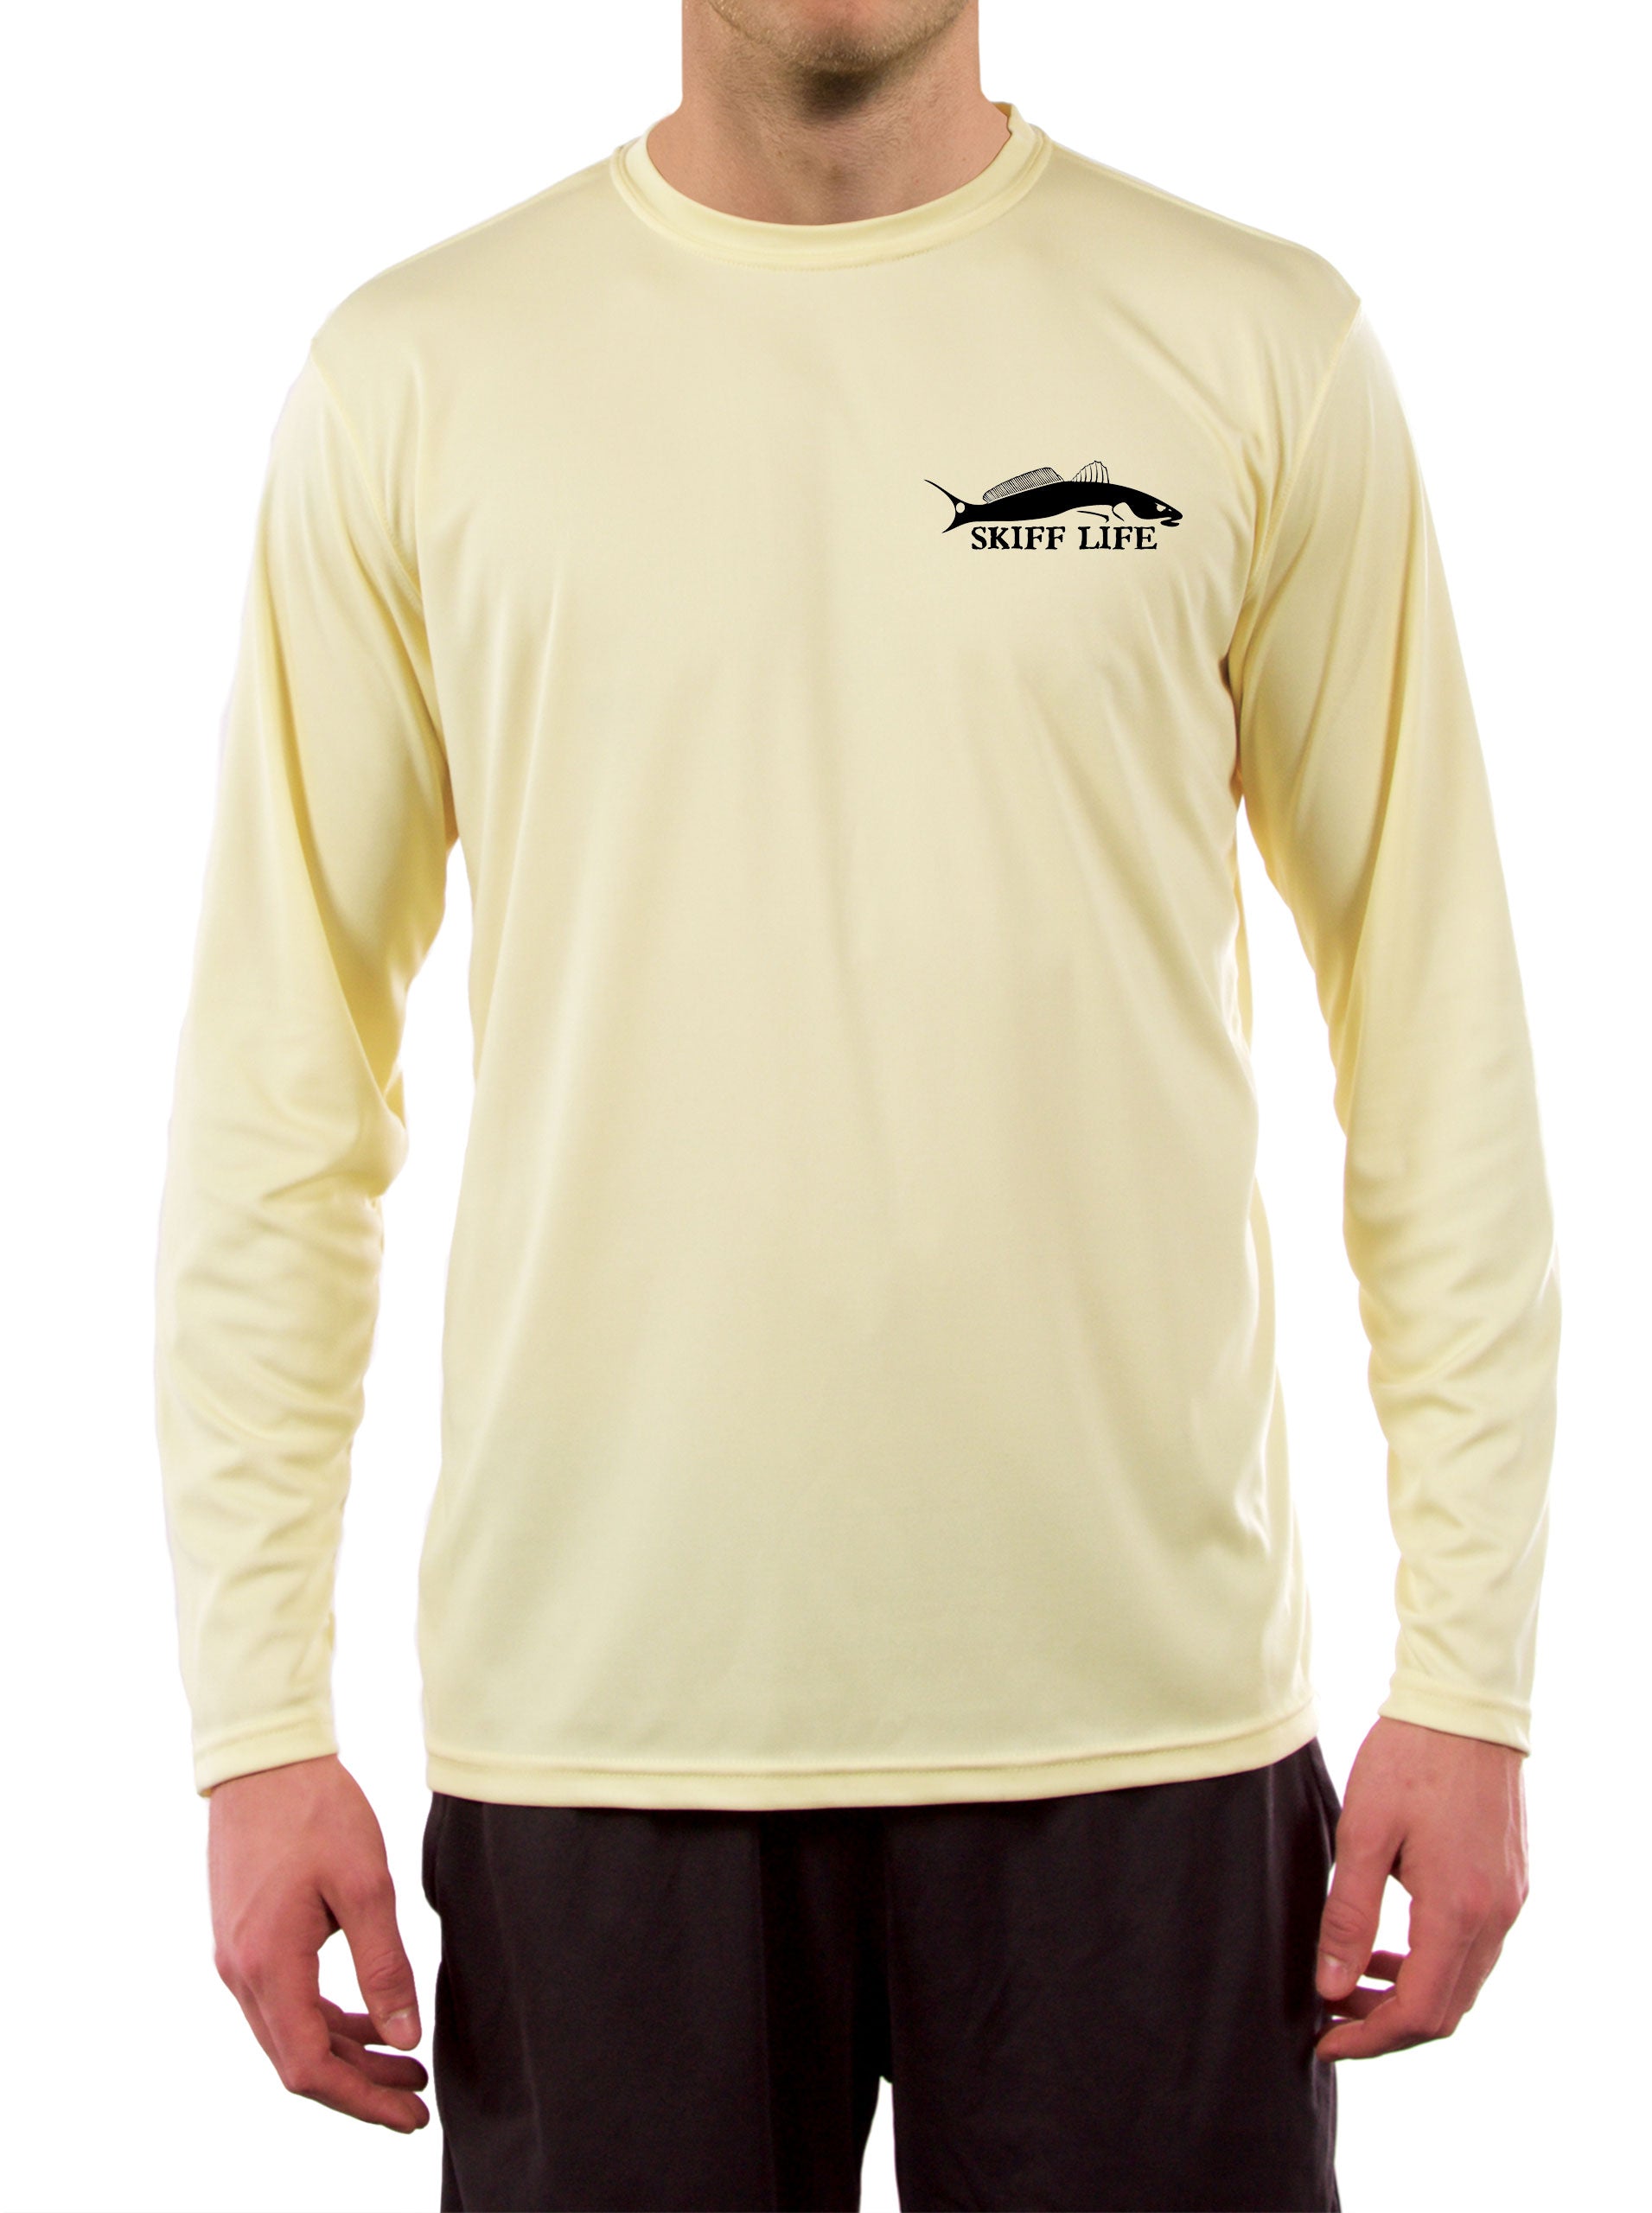 Dry Fit Performance Shirt Mens Small Peach Marathon FL Fishing Long Sleeve